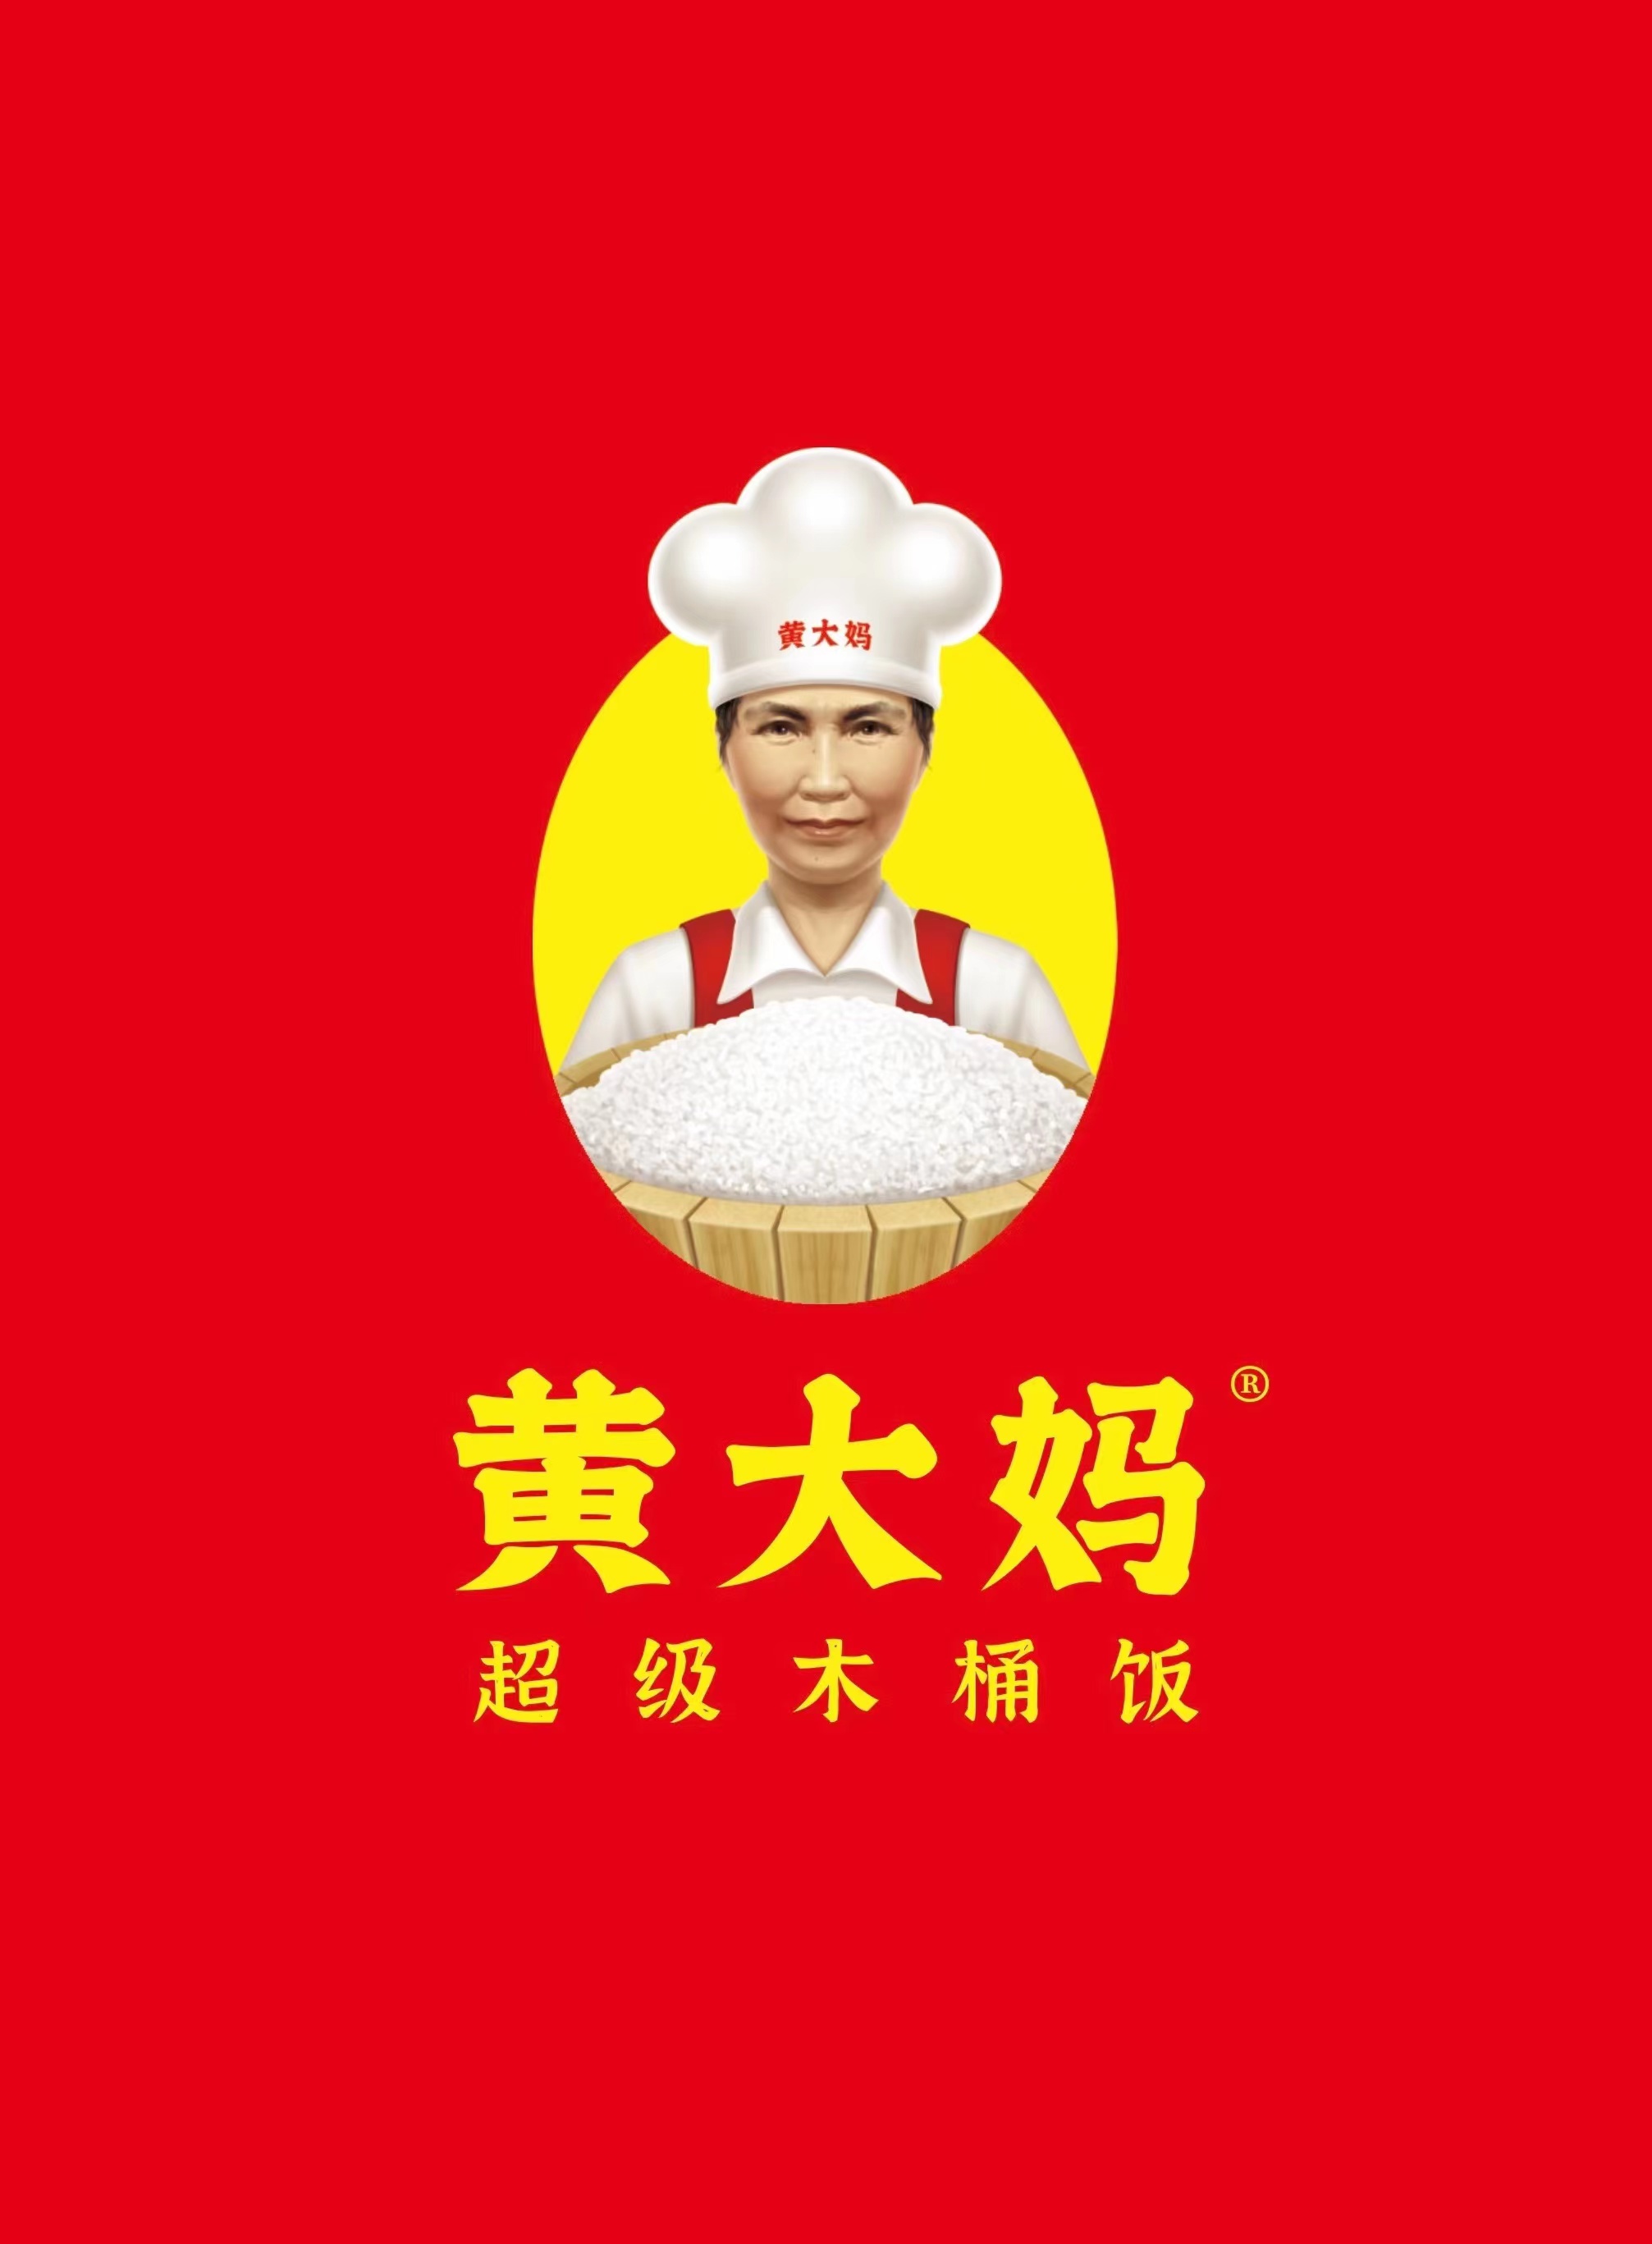 黃大媽餐飲管理（惠州）有限公司LOGO